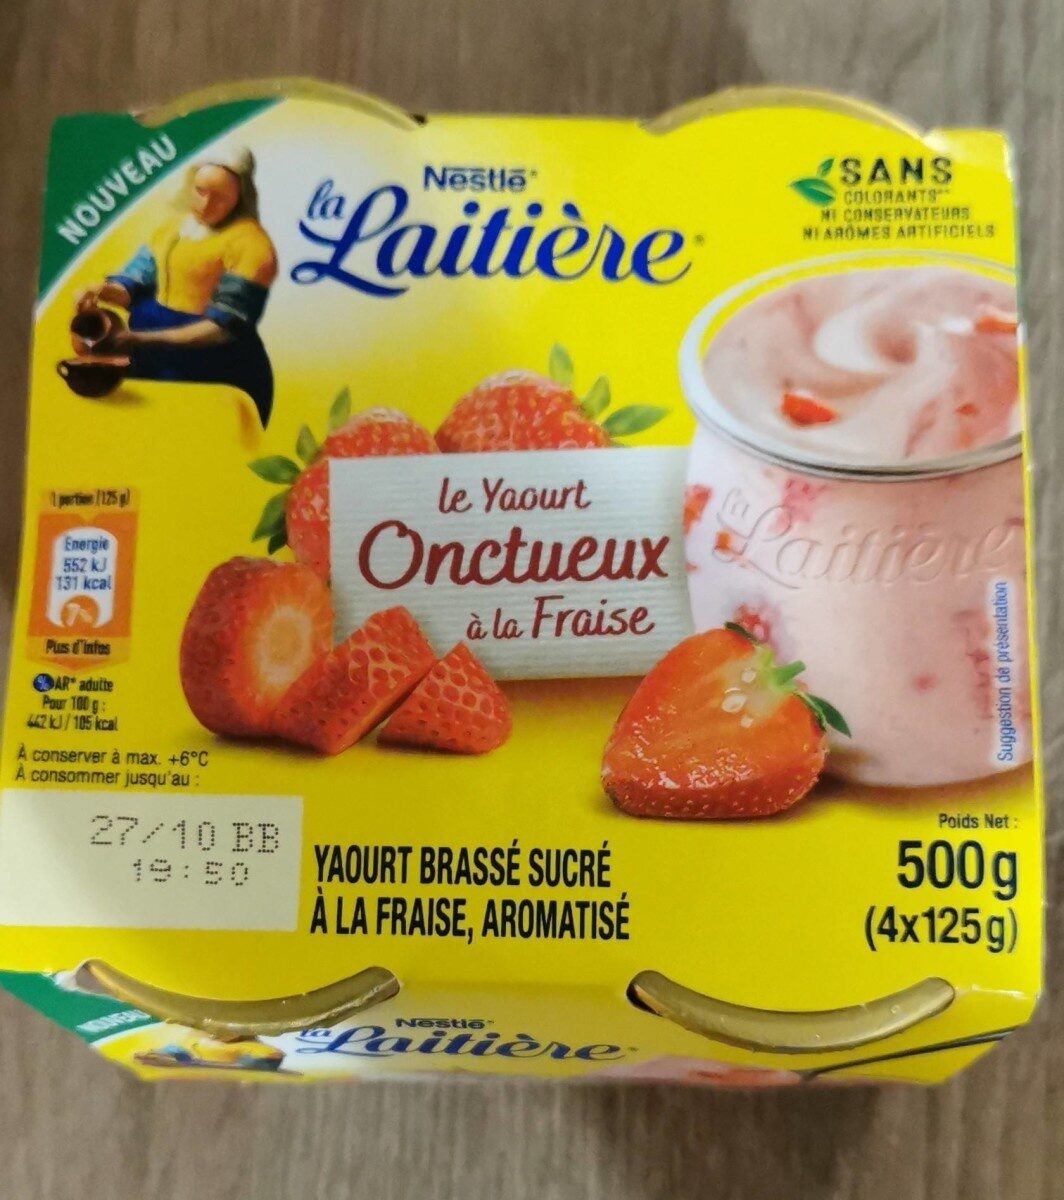 Le yaourt onctueux à la fraise - Produkt - fr